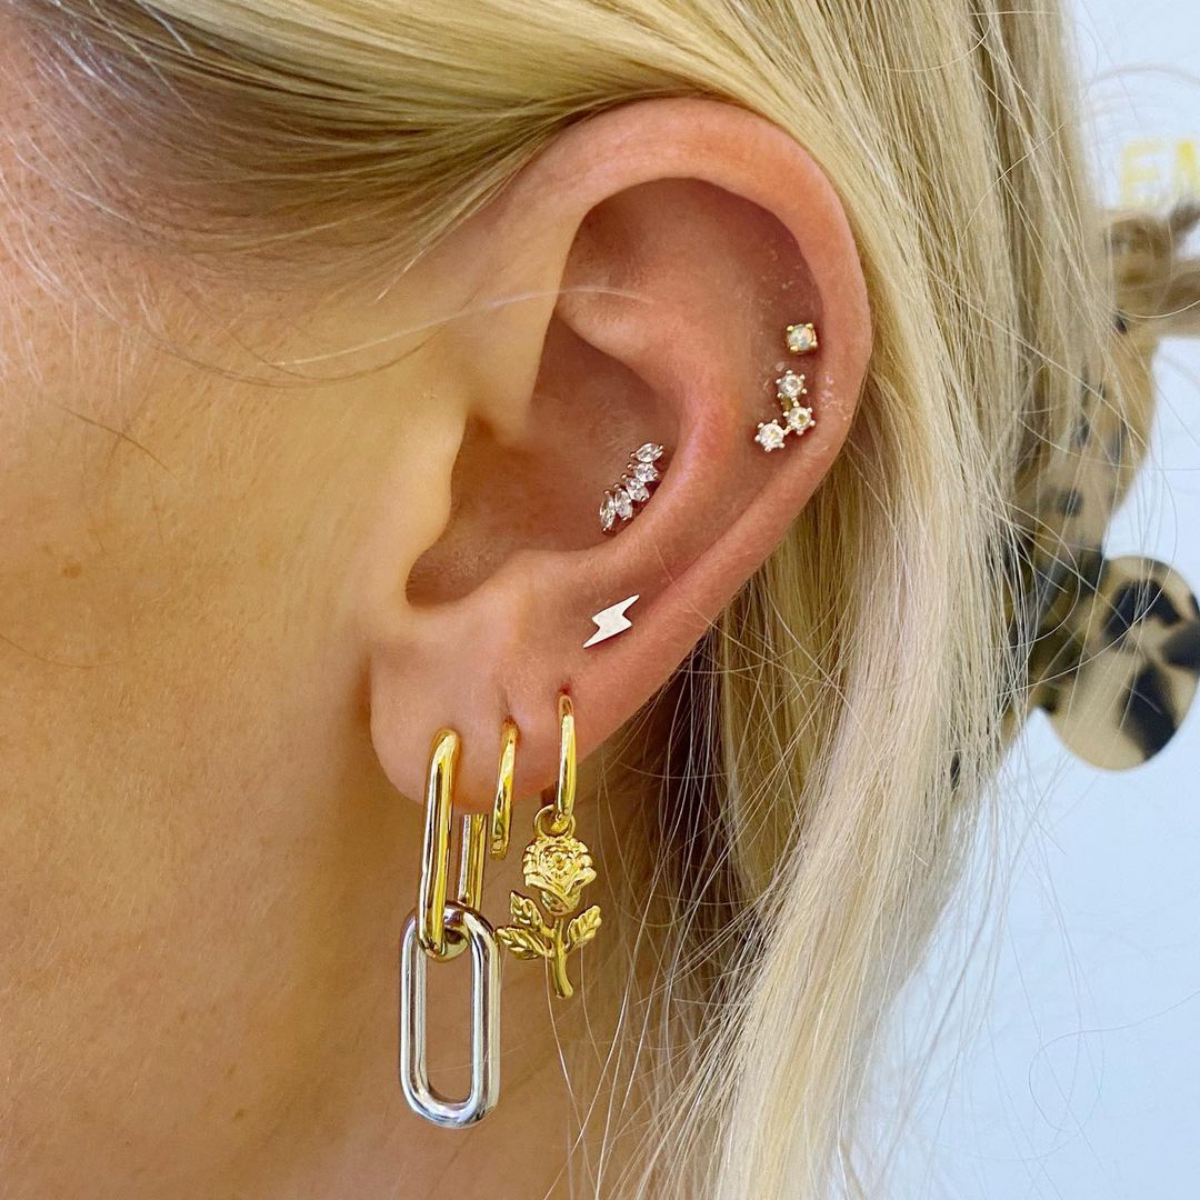 mixed metal ear piercings